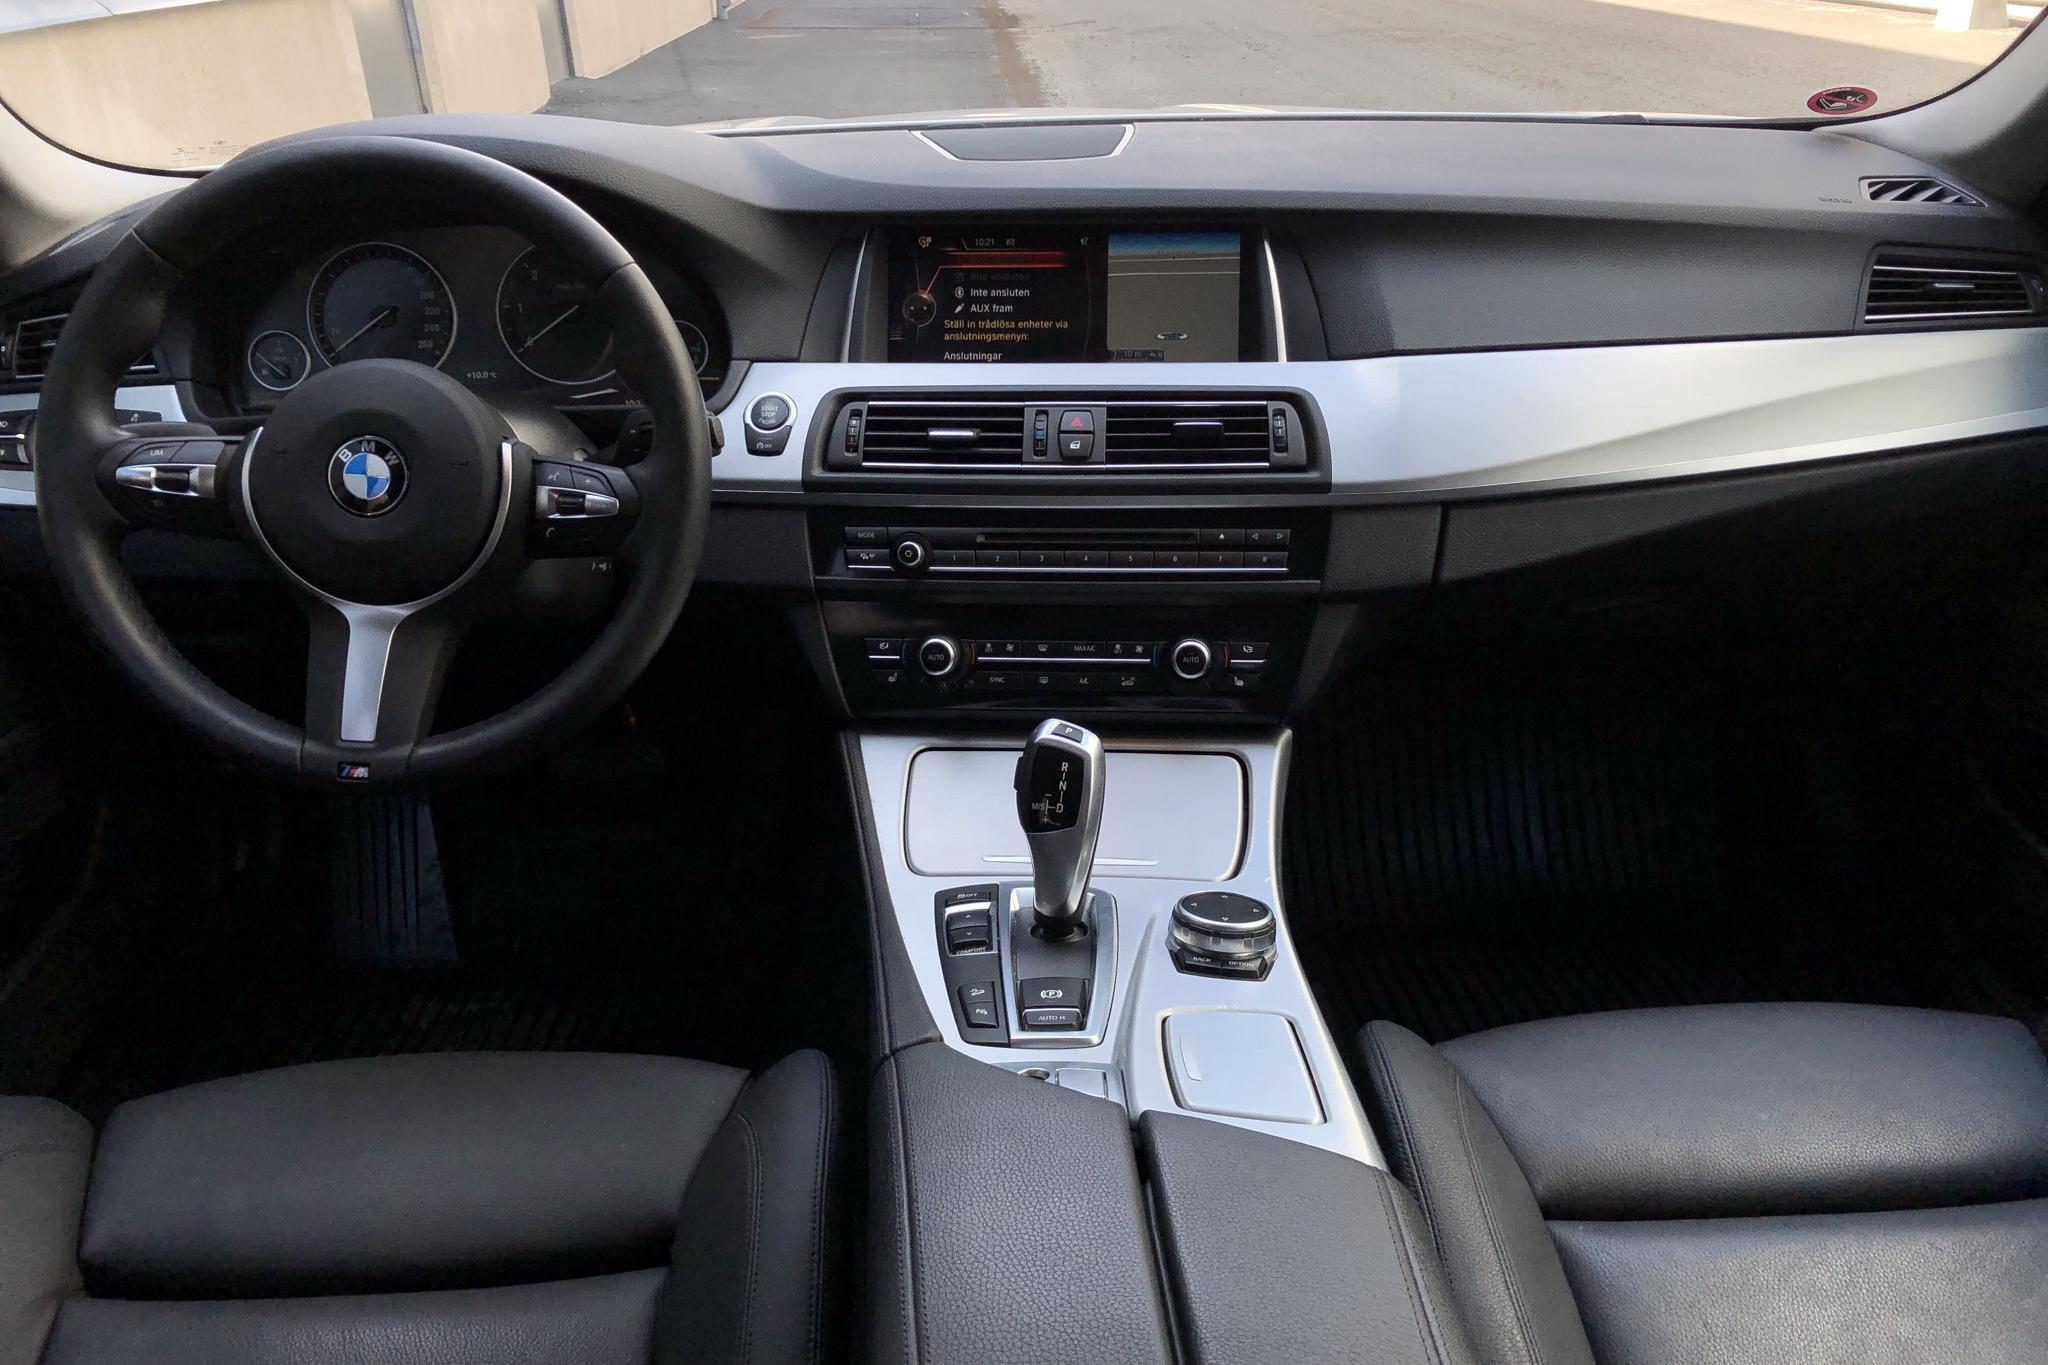 BMW 520d xDrive Touring, F11 (190hk) - 110 800 km - Automatic - white - 2017